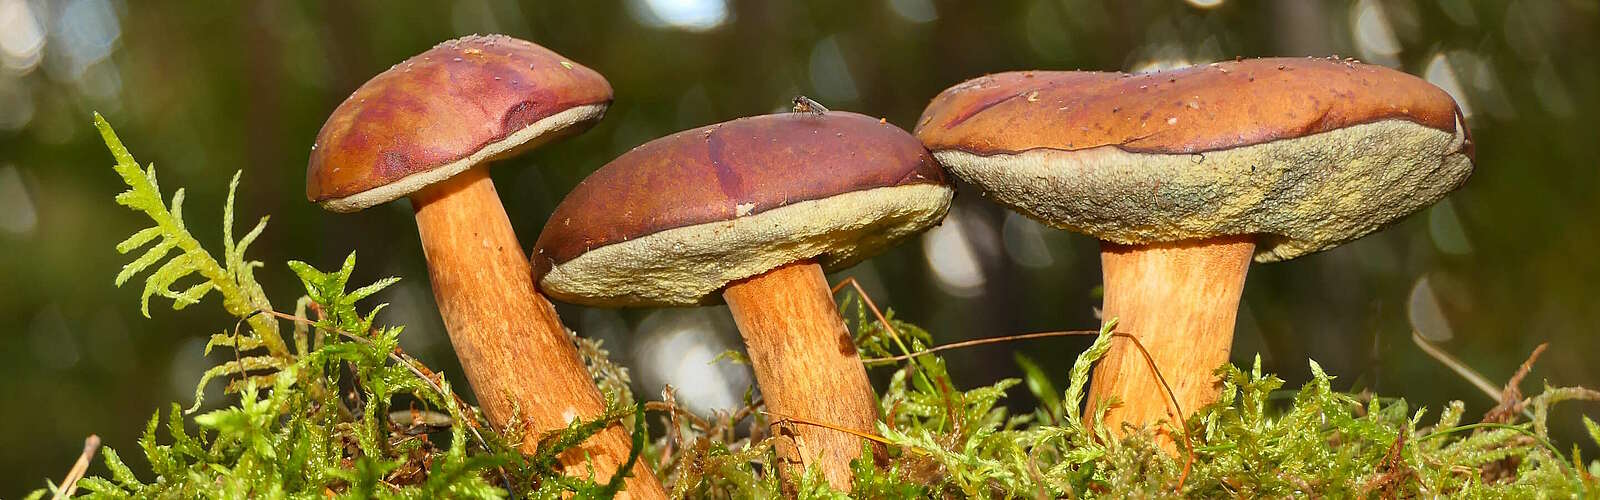 Pilze im Wald,
        
    

        Foto: Pixabay/Krzysztof Niewolny